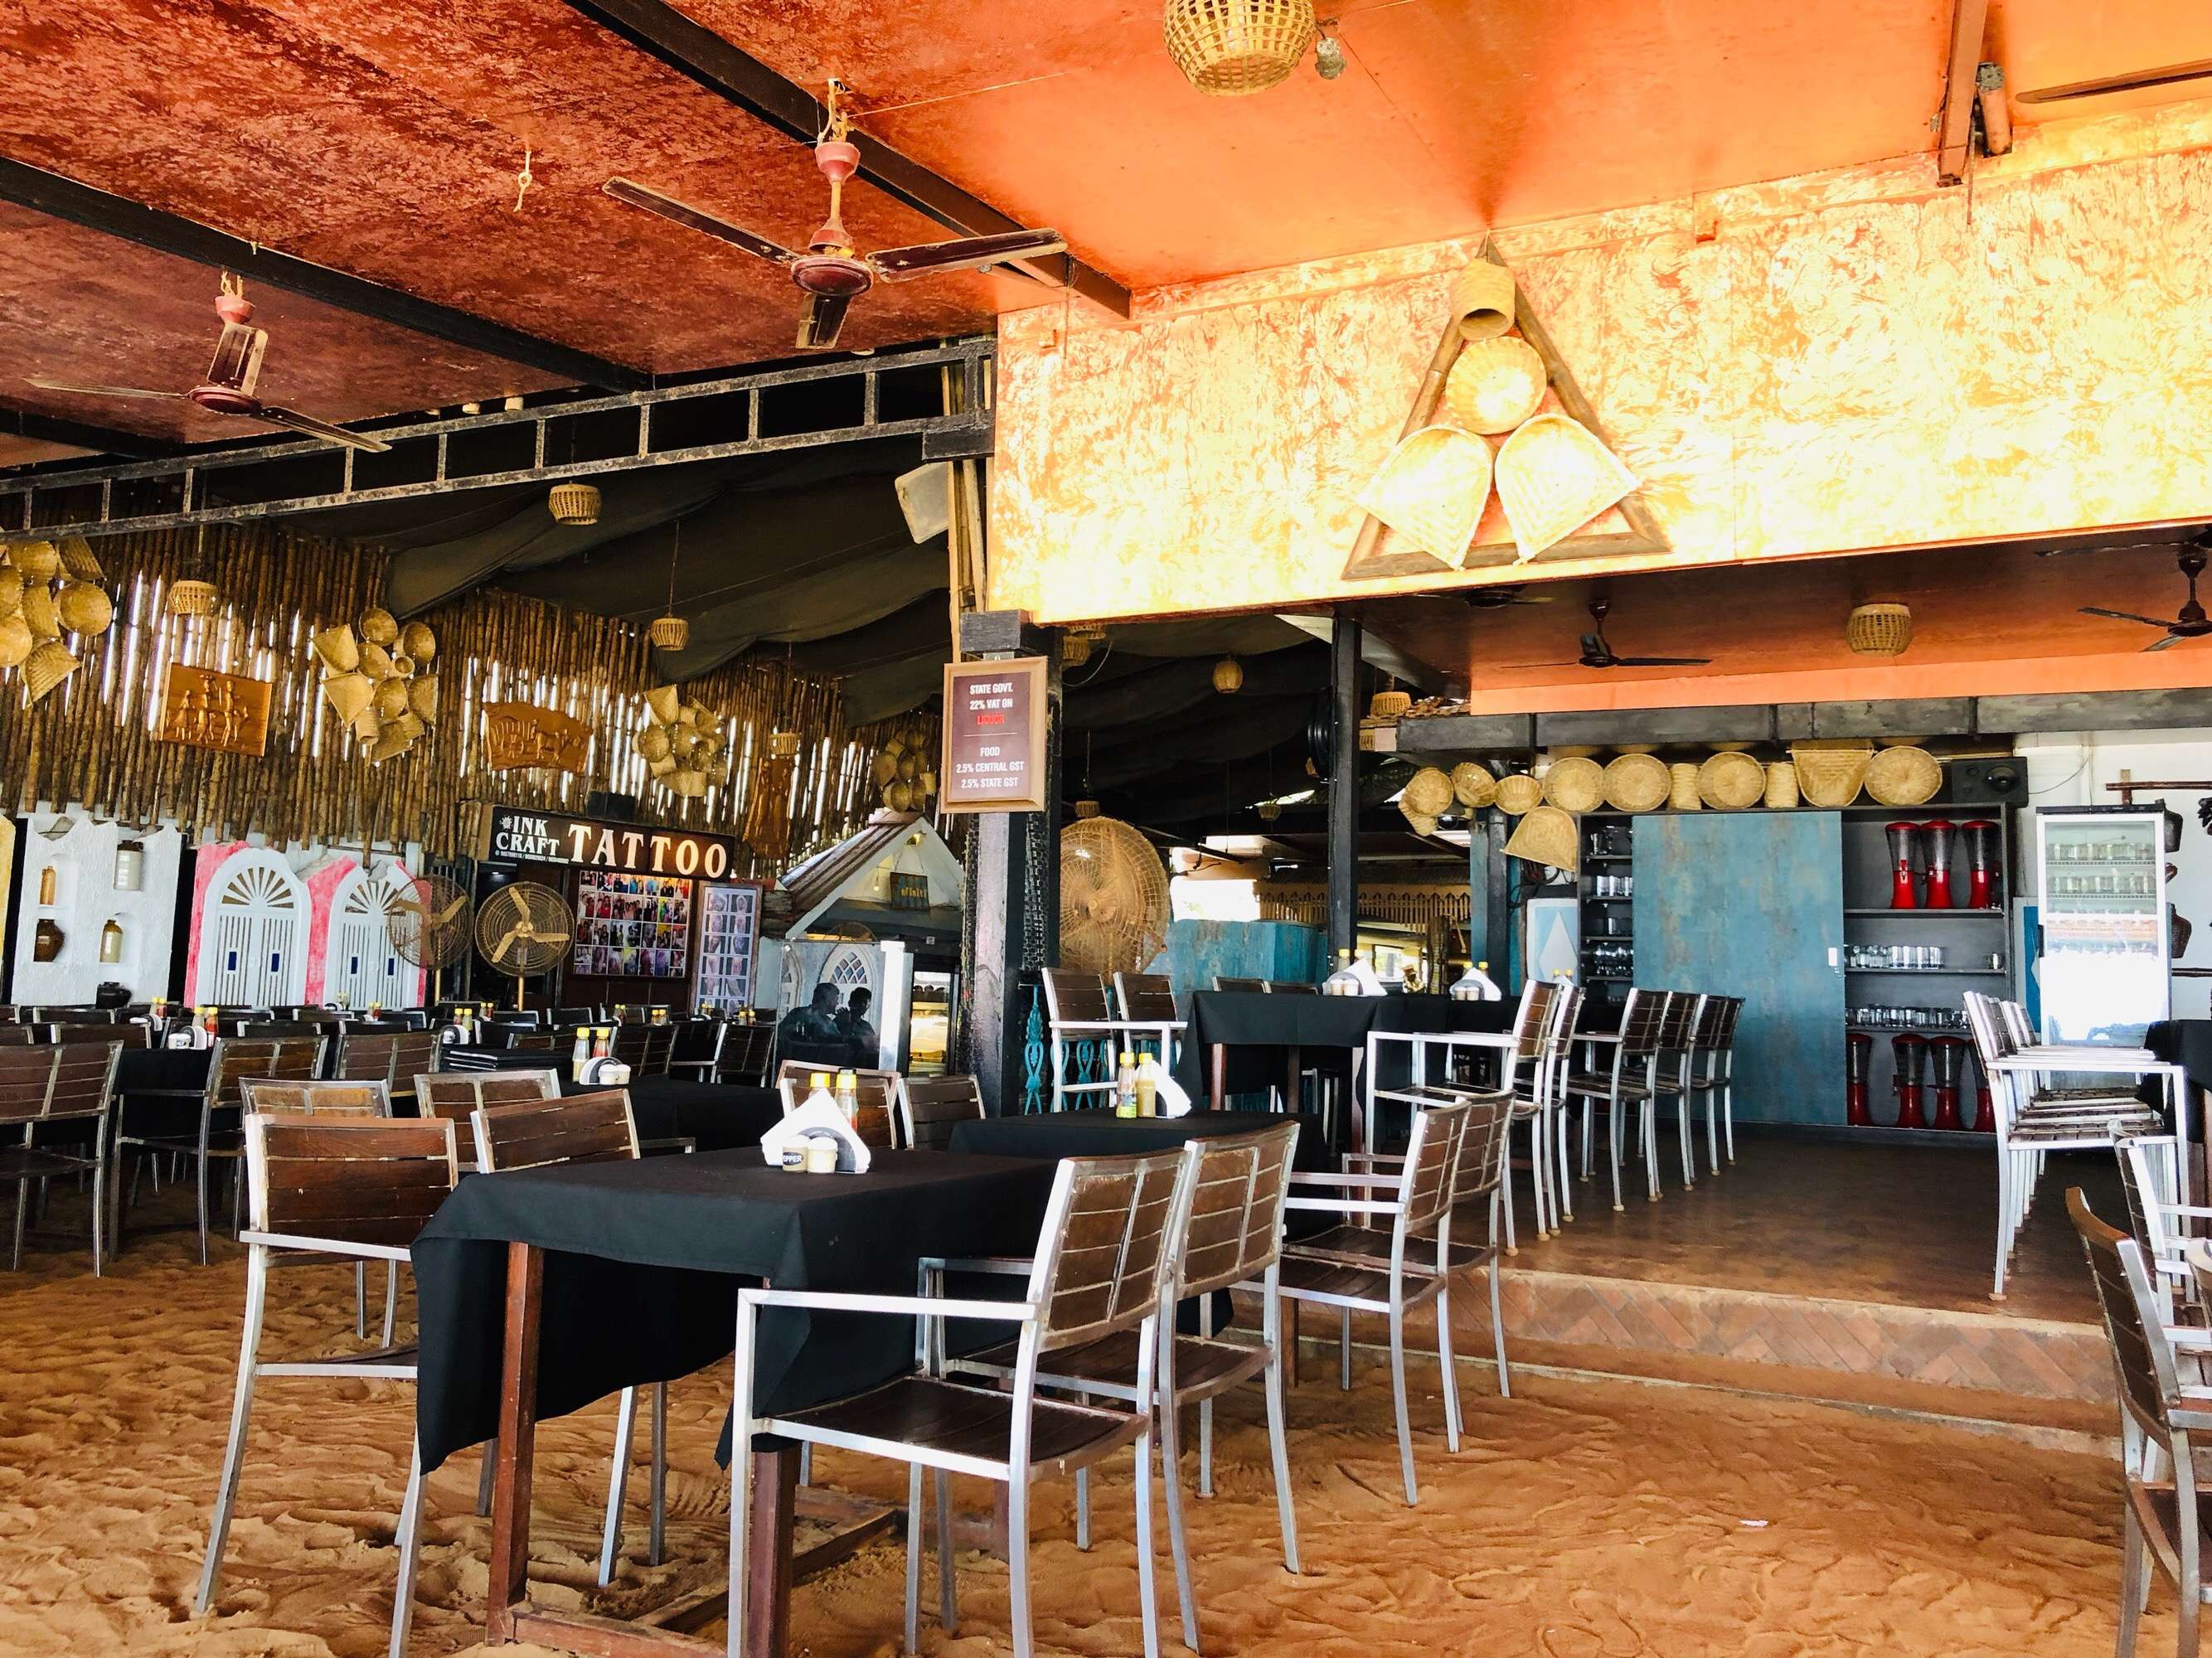 Britto's Restaurant & Bar, Baga, Goa | Zomato